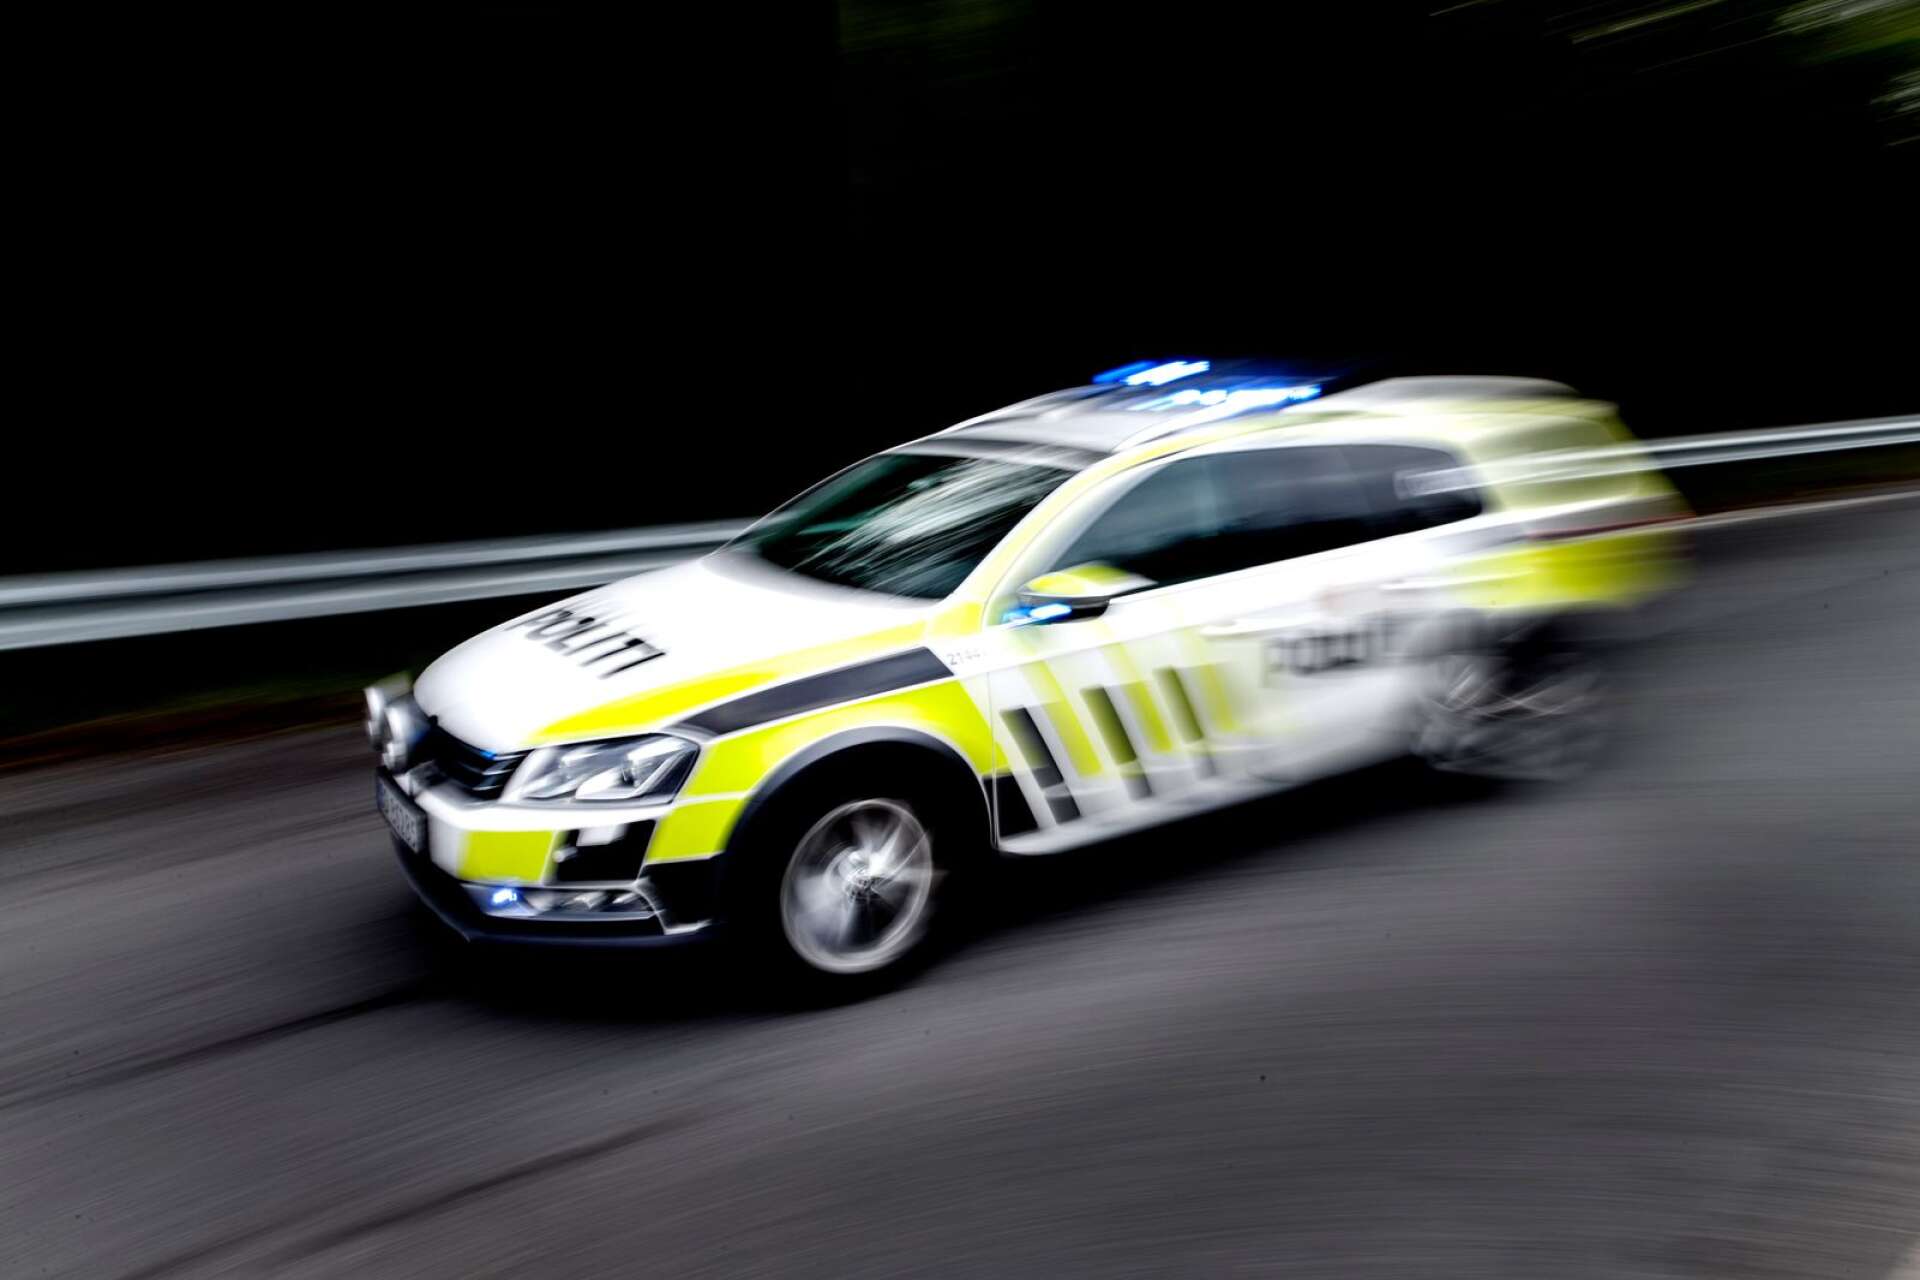 Originalet. En fejkad norsk polisbil ska ha kört genom Säffle med blåljusen på vid lunchtid i lördags.